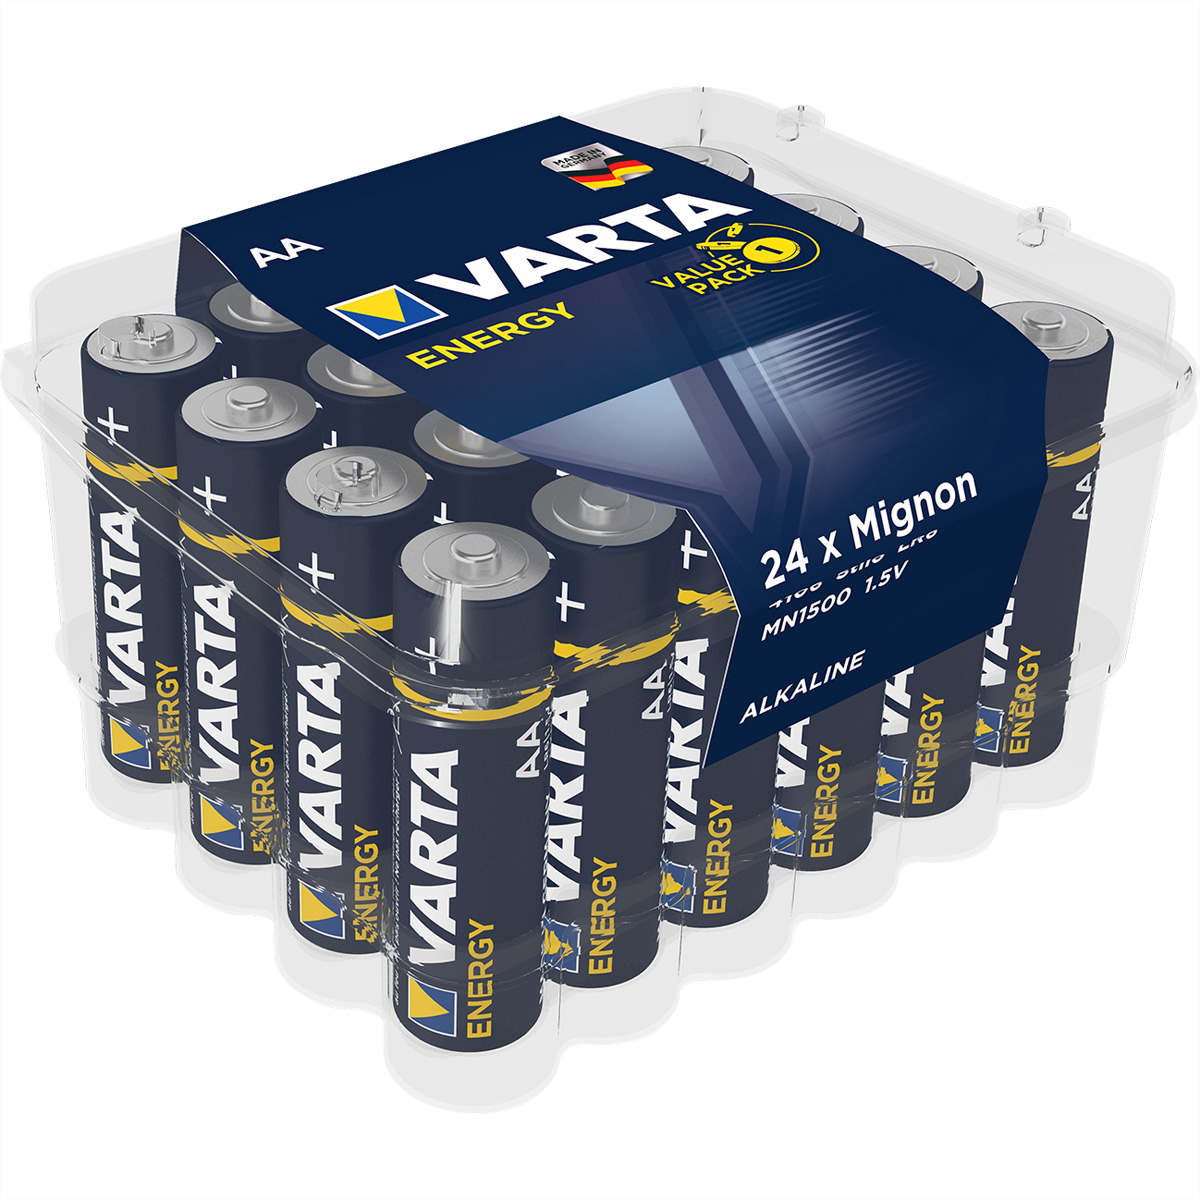 VARTA Batterie Mignon AA, AM-3, LR 06, 1,5V, 24er Pack